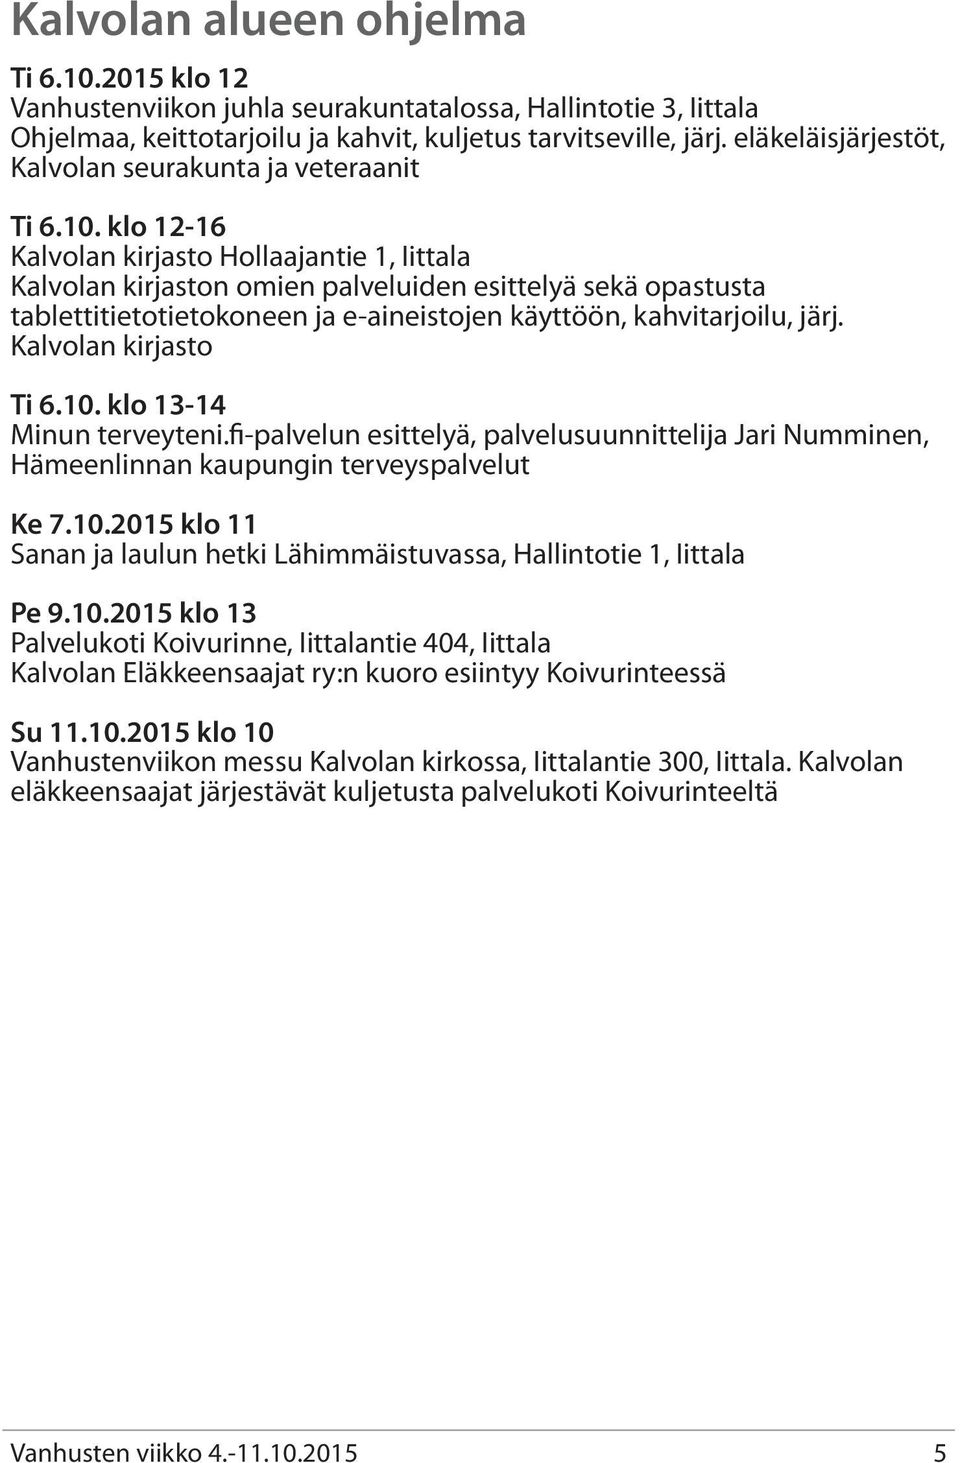 klo 12-16 Kalvolan kirjasto Hollaajantie 1, Iittala Kalvolan kirjaston omien palveluiden esittelyä sekä opastusta tablettitietotietokoneen ja e-aineistojen käyttöön, kahvitarjoilu, järj.